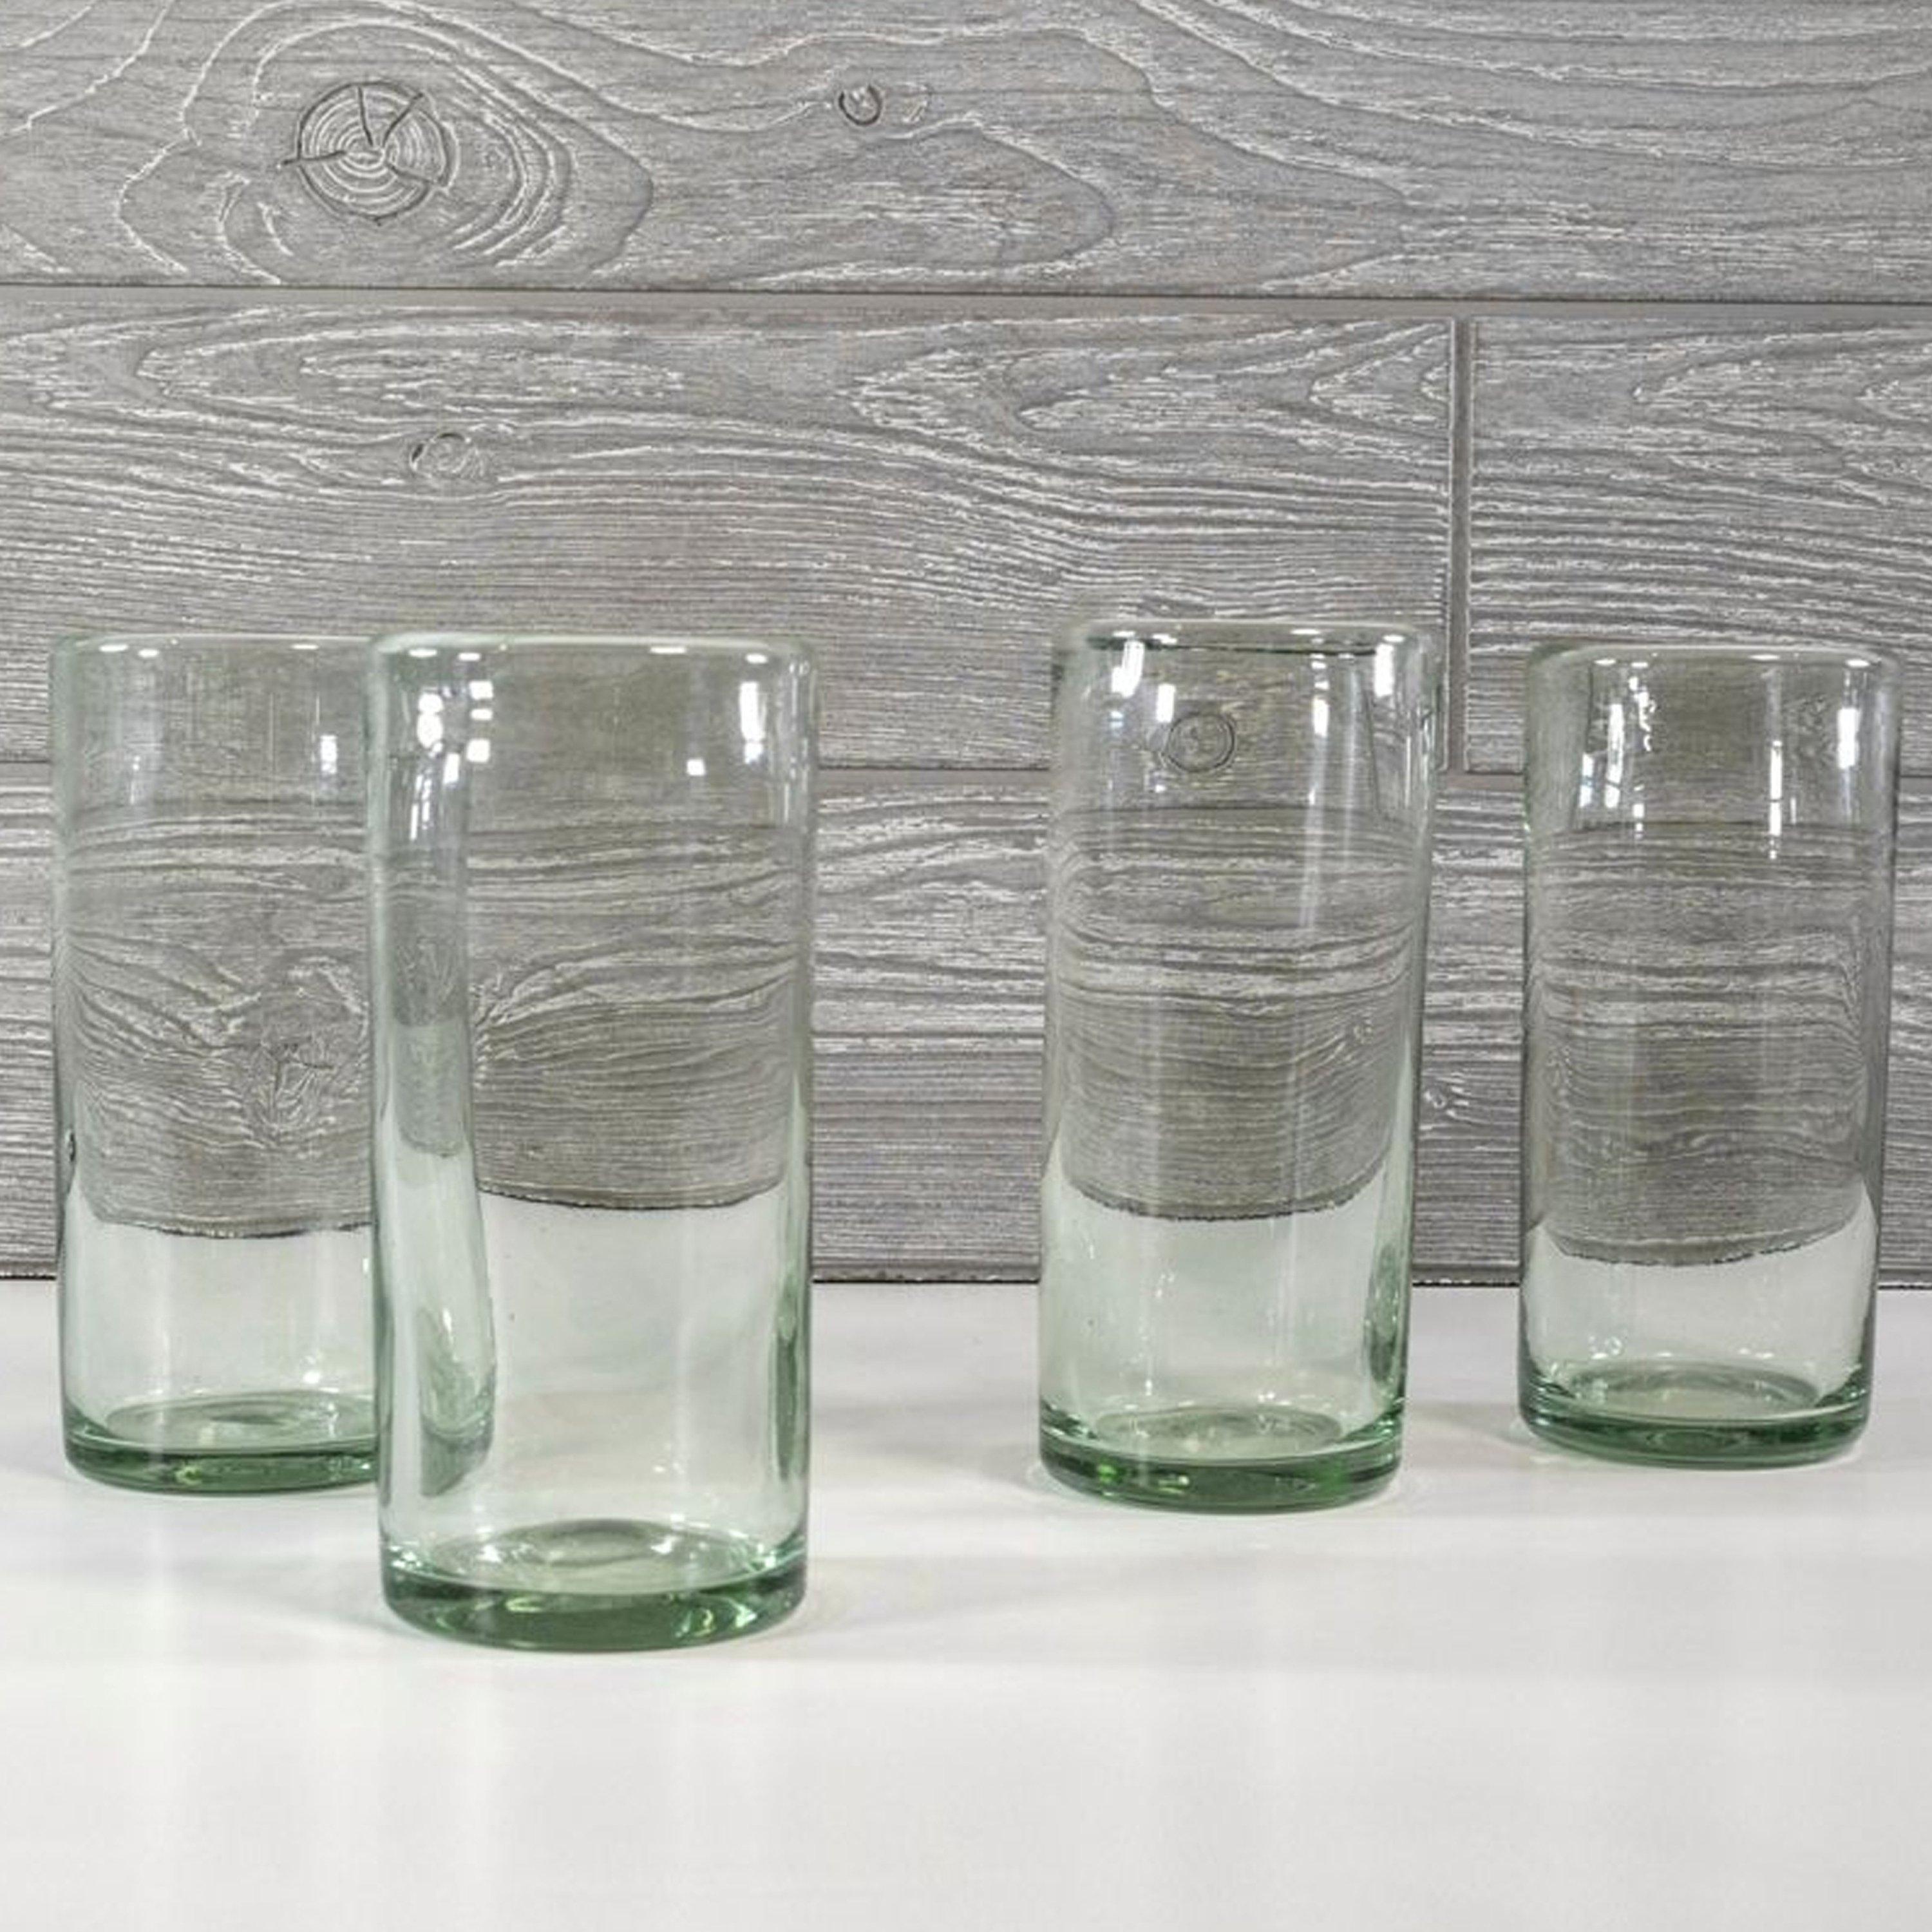 Green Aperitif Glasses, Set of 4 + Reviews